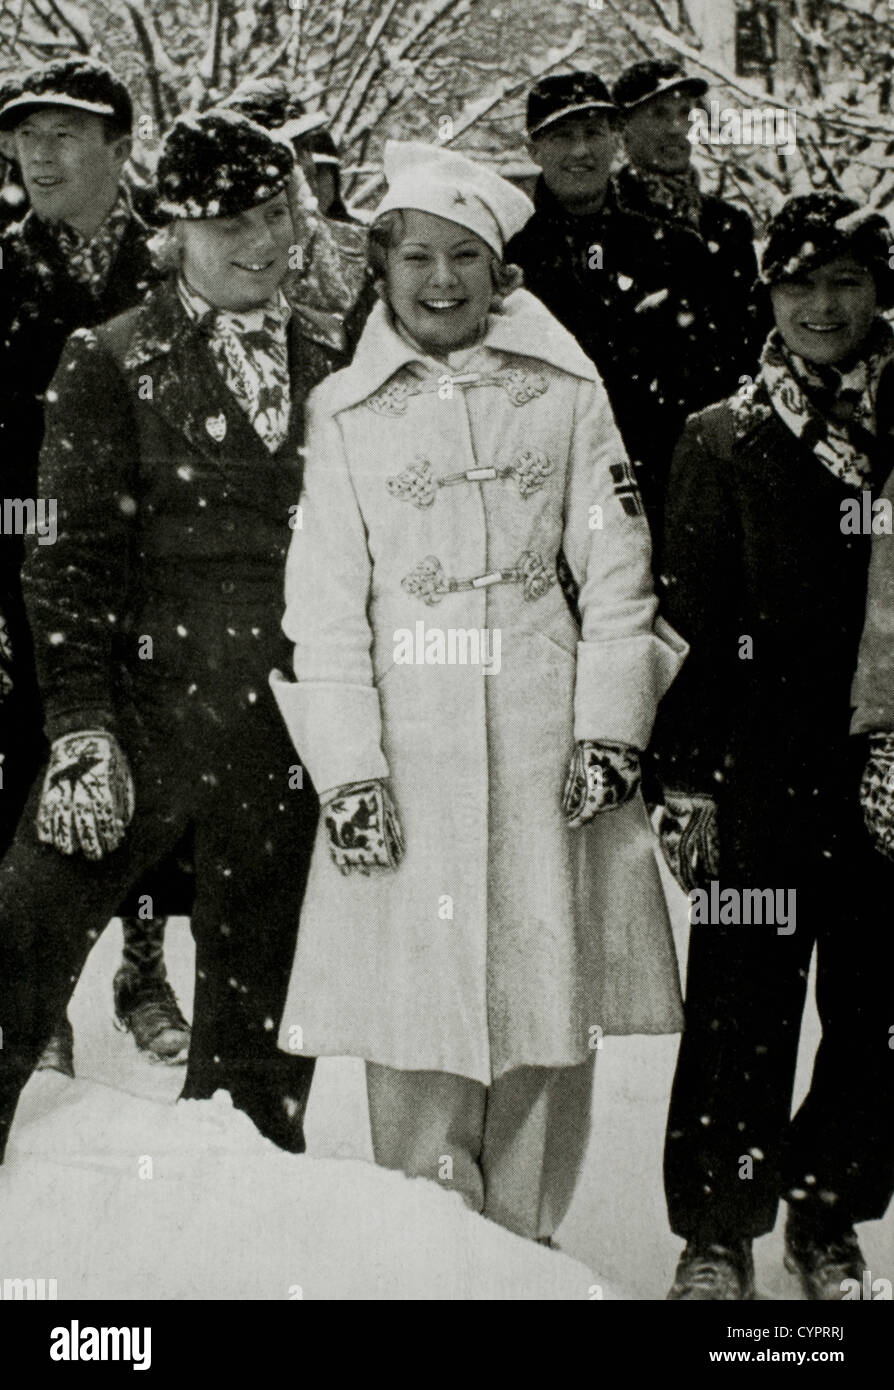 Sonja Henie, la patineuse artistique, à 1936, les Jeux Olympiques d'hiver de Garmisch-Partenkirchen, Allemagne Banque D'Images